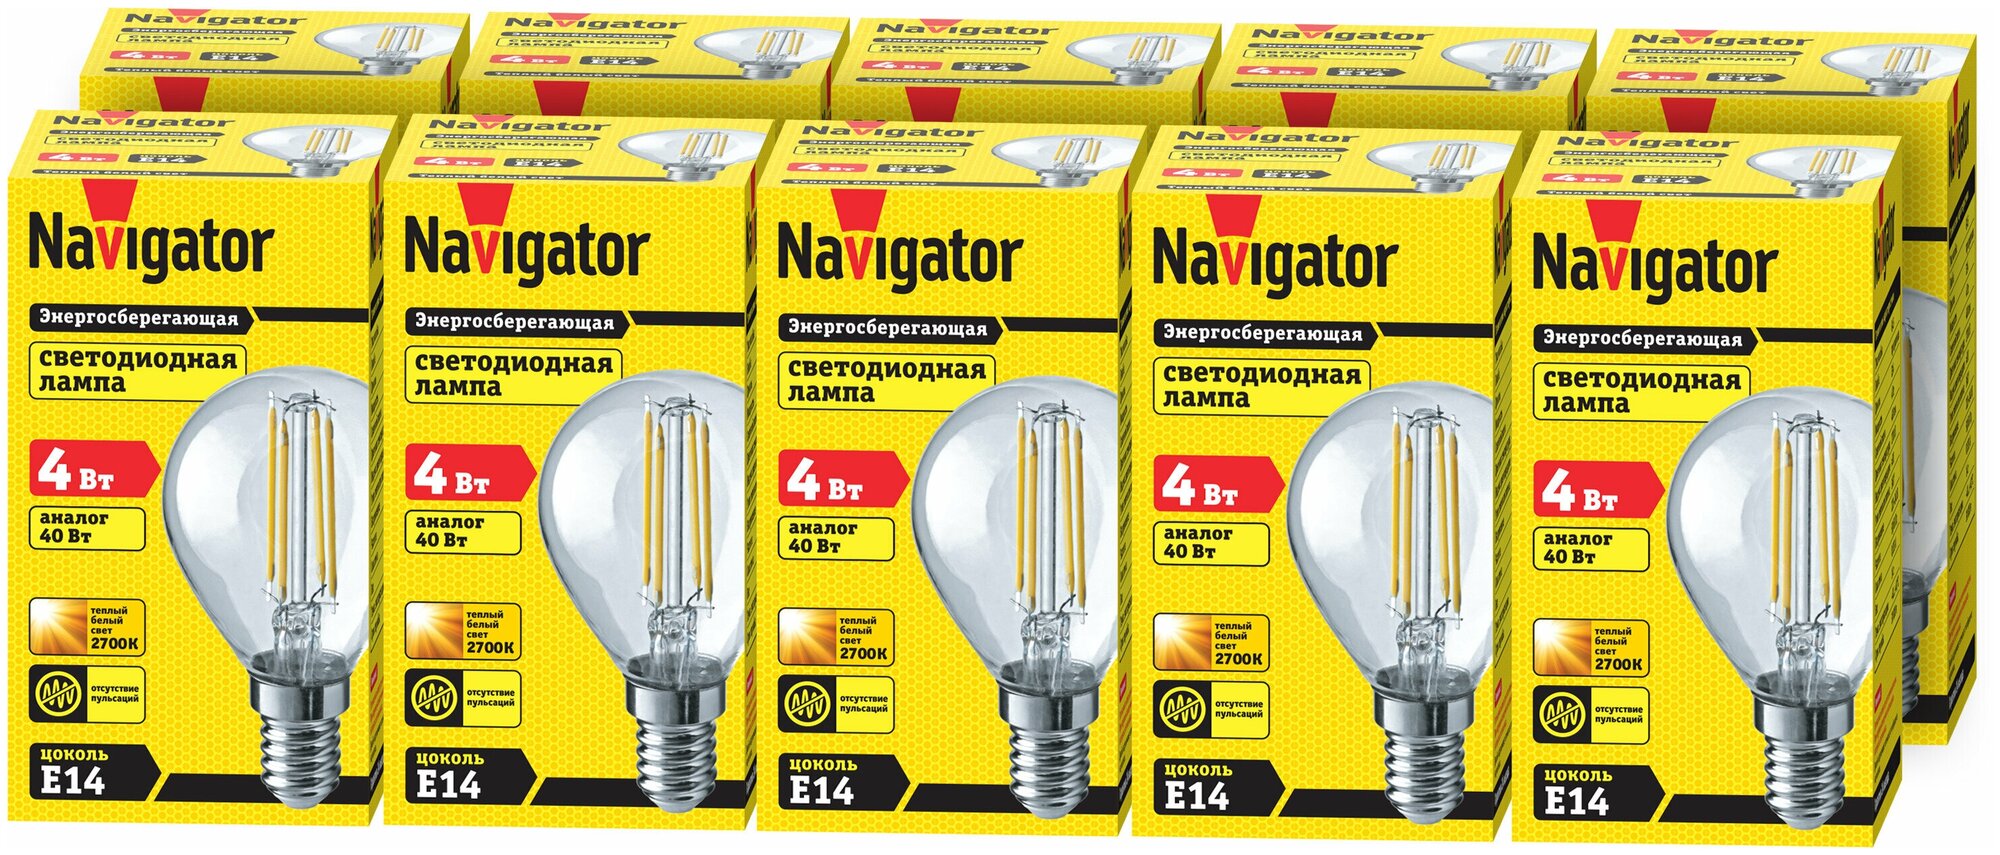 Лампа светодиодная Navigator 71 309 NLL-F, 4 Вт, шар, Е14, теплый свет 2700К, упаковка 10 шт.